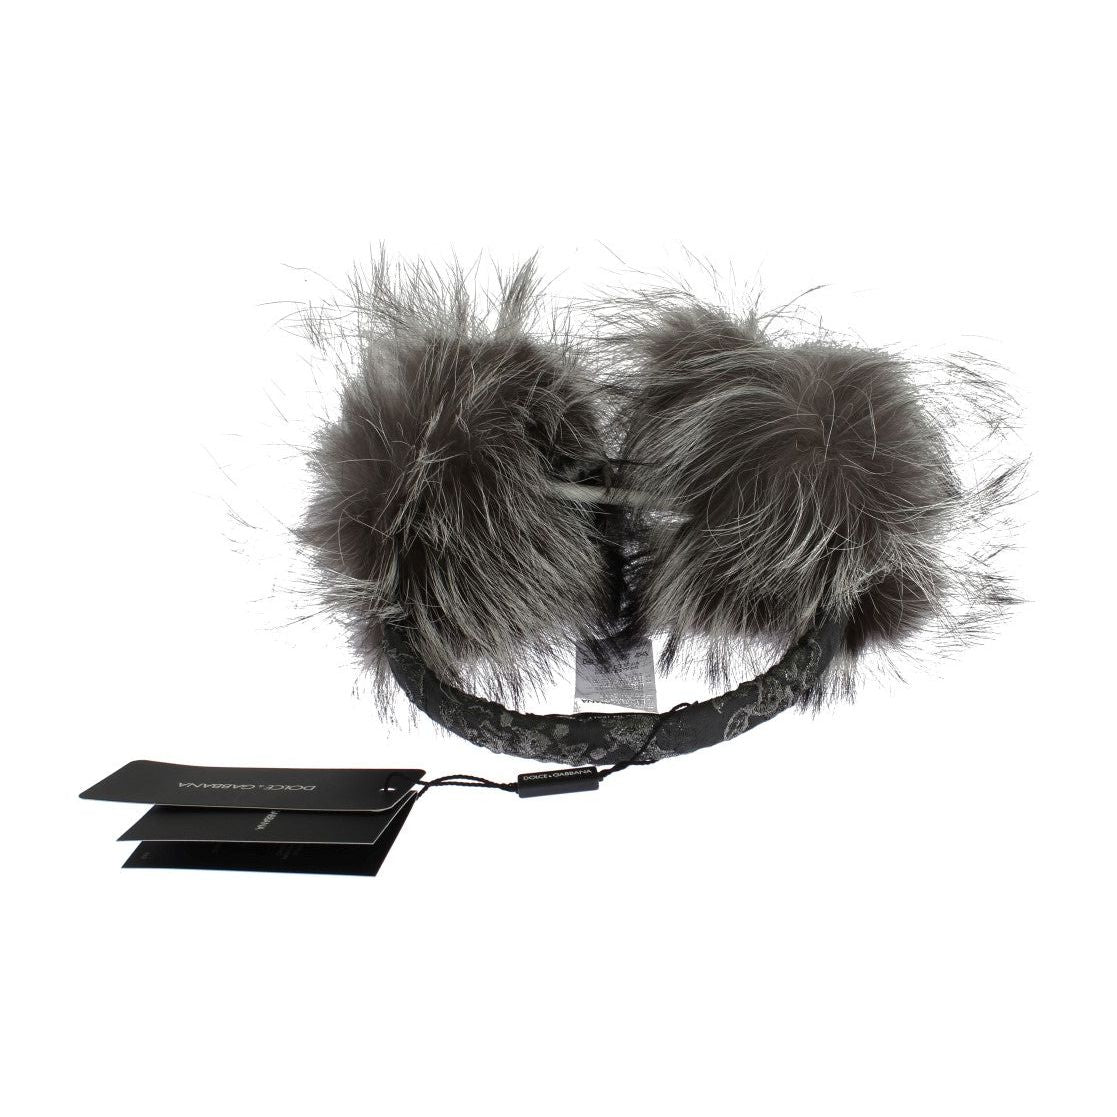 Dolce & Gabbana Elegant Fur and Crystal Ear Muffs gray-fox-fur-crystal-ear-muffs Ear Muffs 302523-gray-fox-fur-crystal-ear-muffs-4.jpg